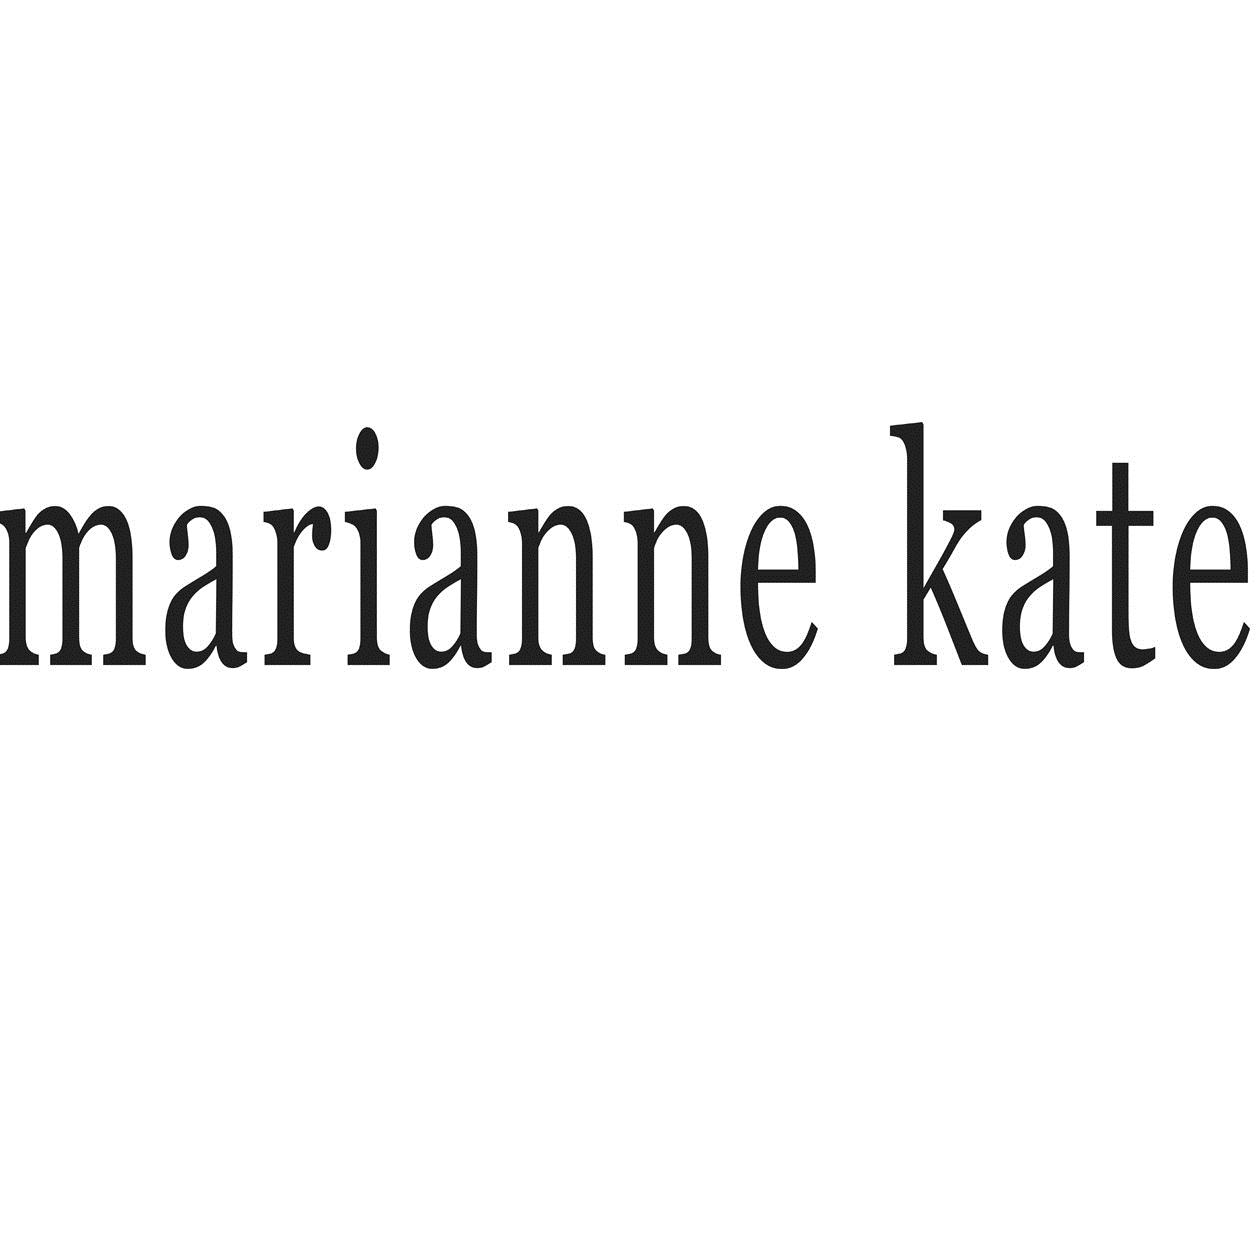 MARIANNE KATE